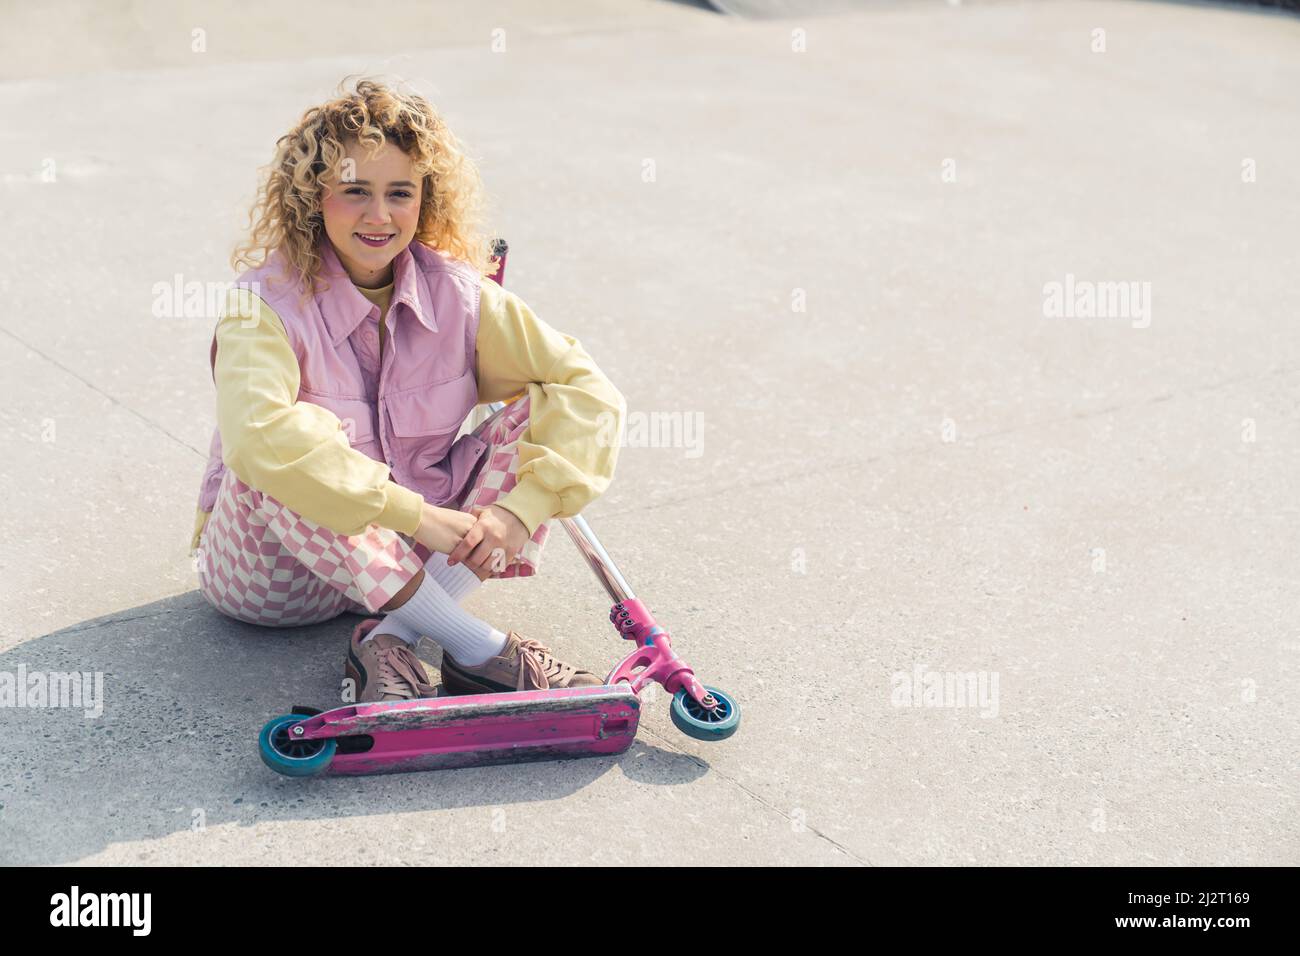 Die attraktive junge, frisch gesichtige blonde Hipster-Frau sitzt lächelnd auf dem Sportplatz, die Beine gekreuzt, der rosarote Roller vor ihrem Blick auf die Kamera voller Aufnahmen. Hochwertige Fotos Stockfoto